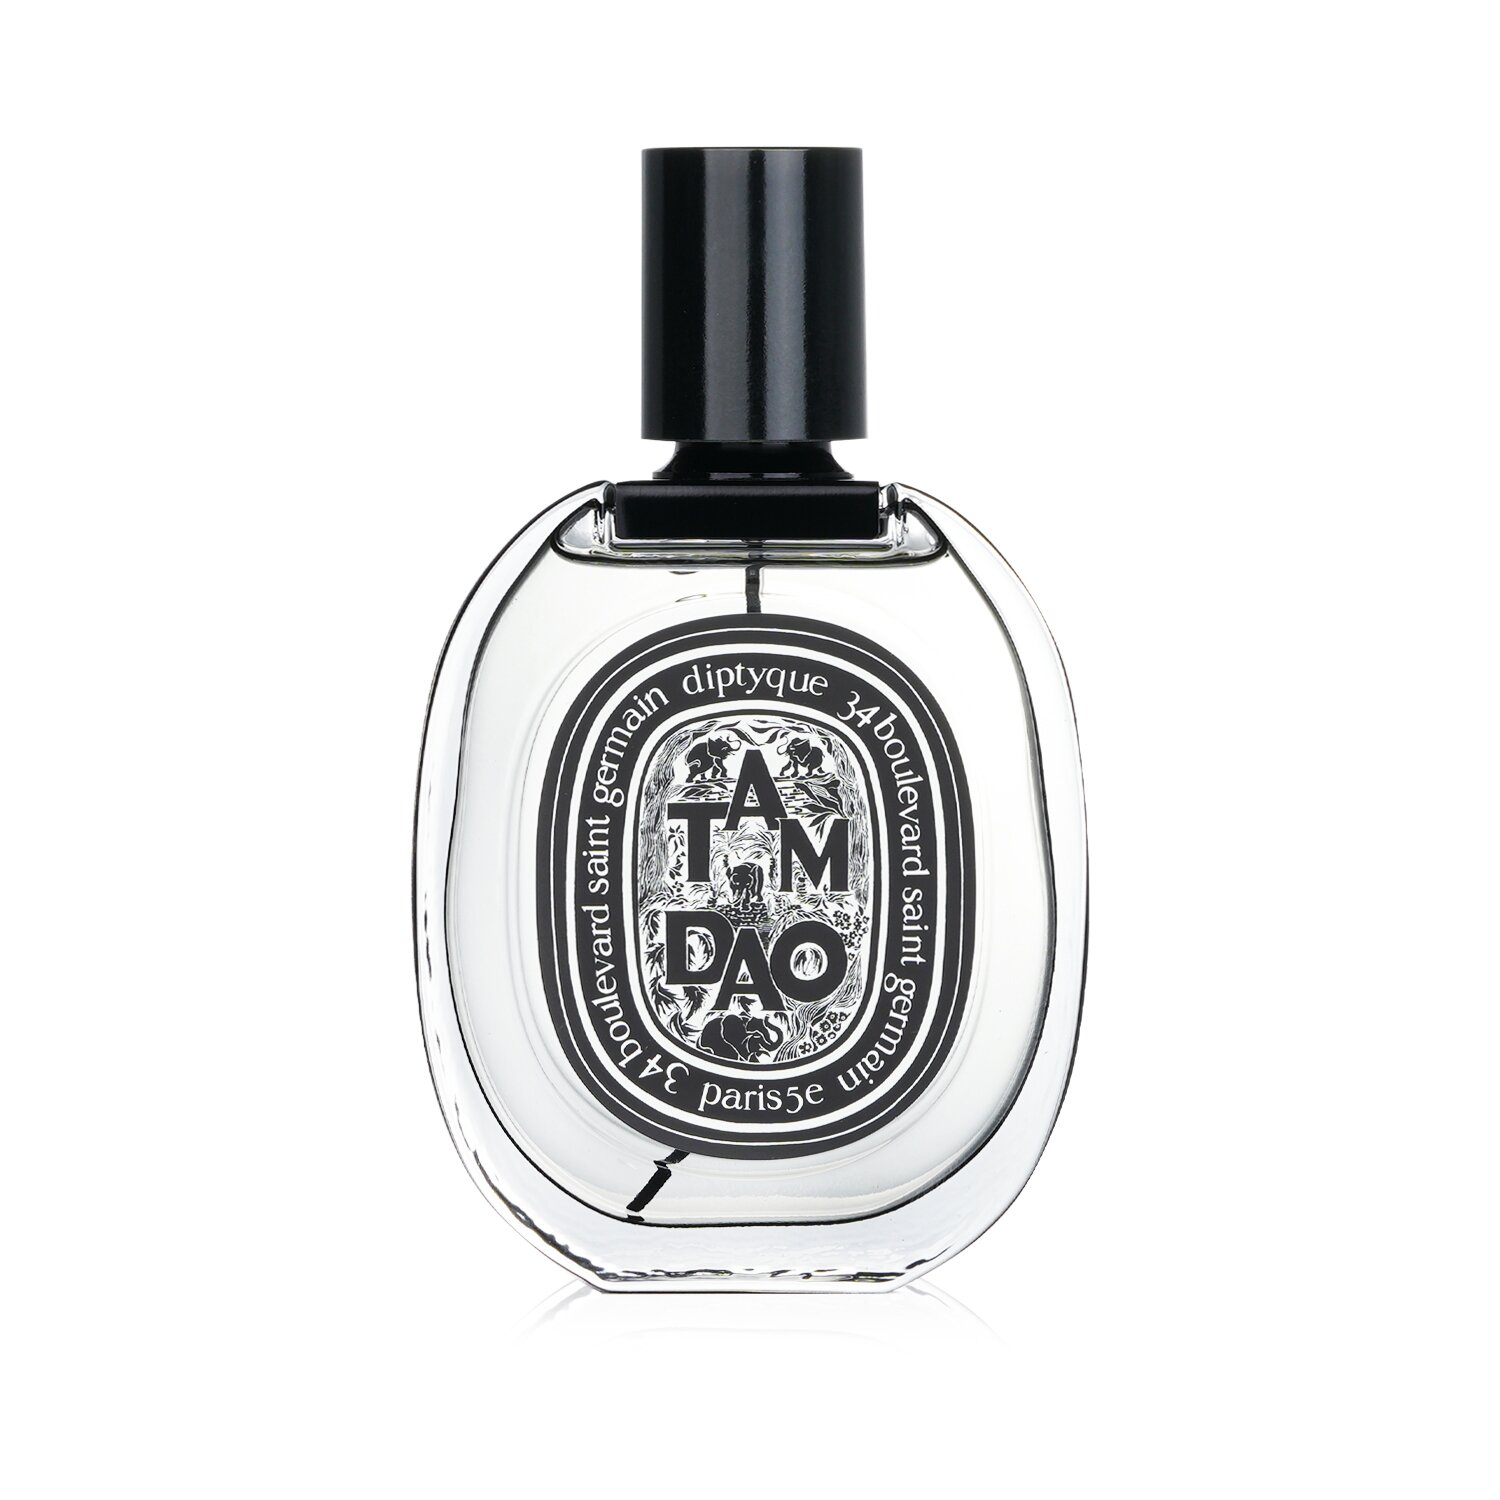 Diptyque Tam Dao Eau De Parfum Spray 75ml/2.5oz